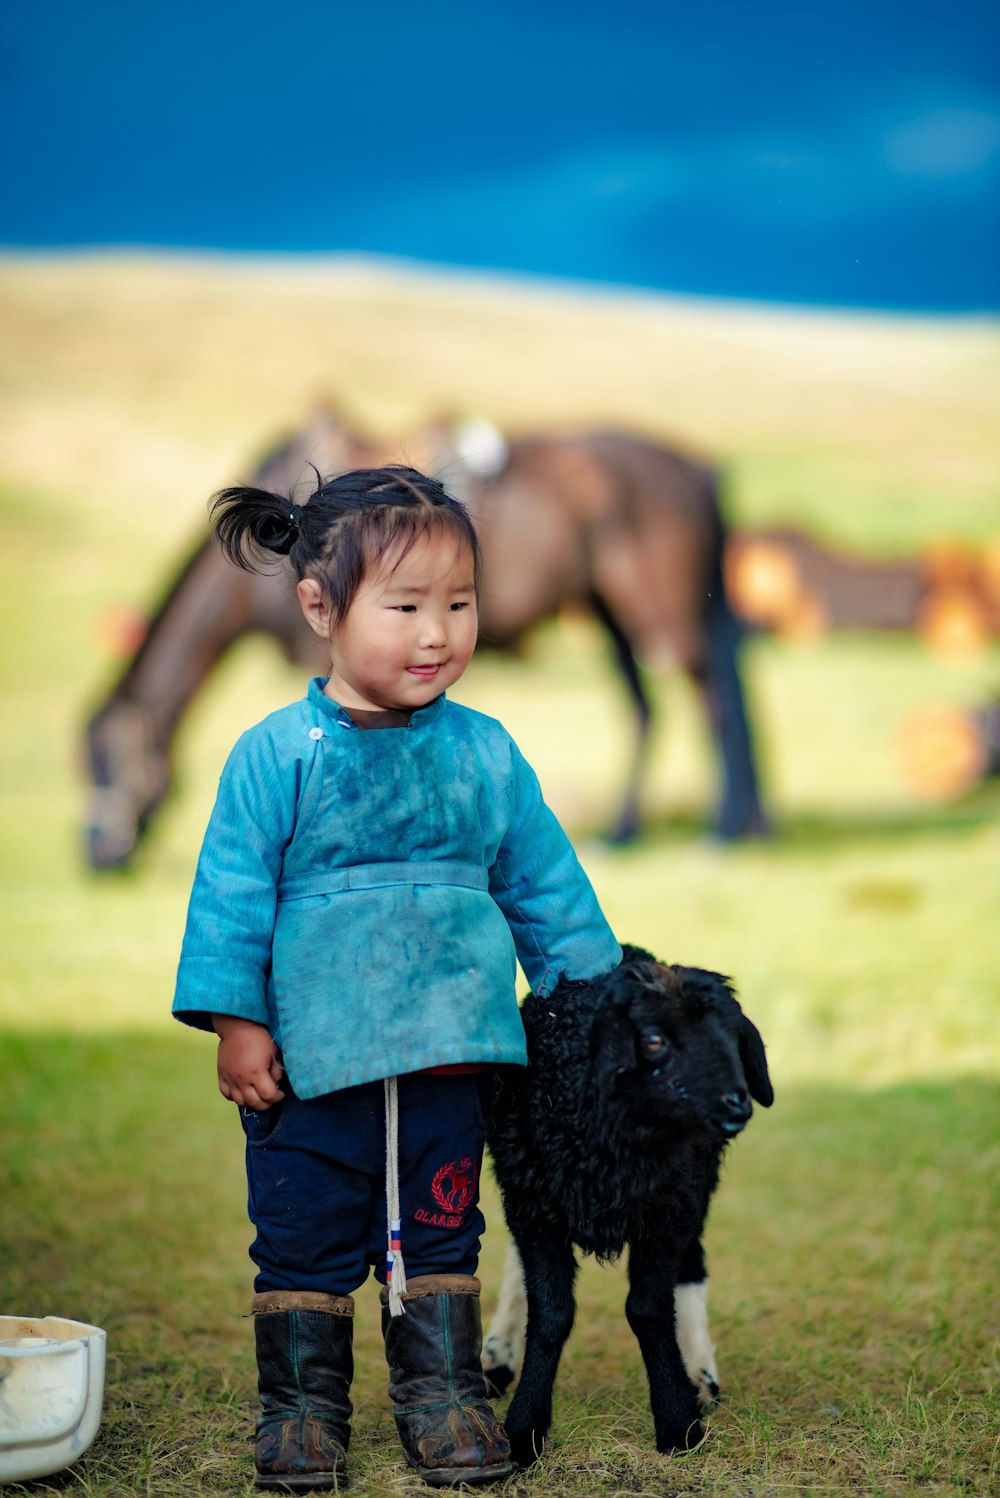 Ein kleines Mädchen steht neben einem schwarzen Hund